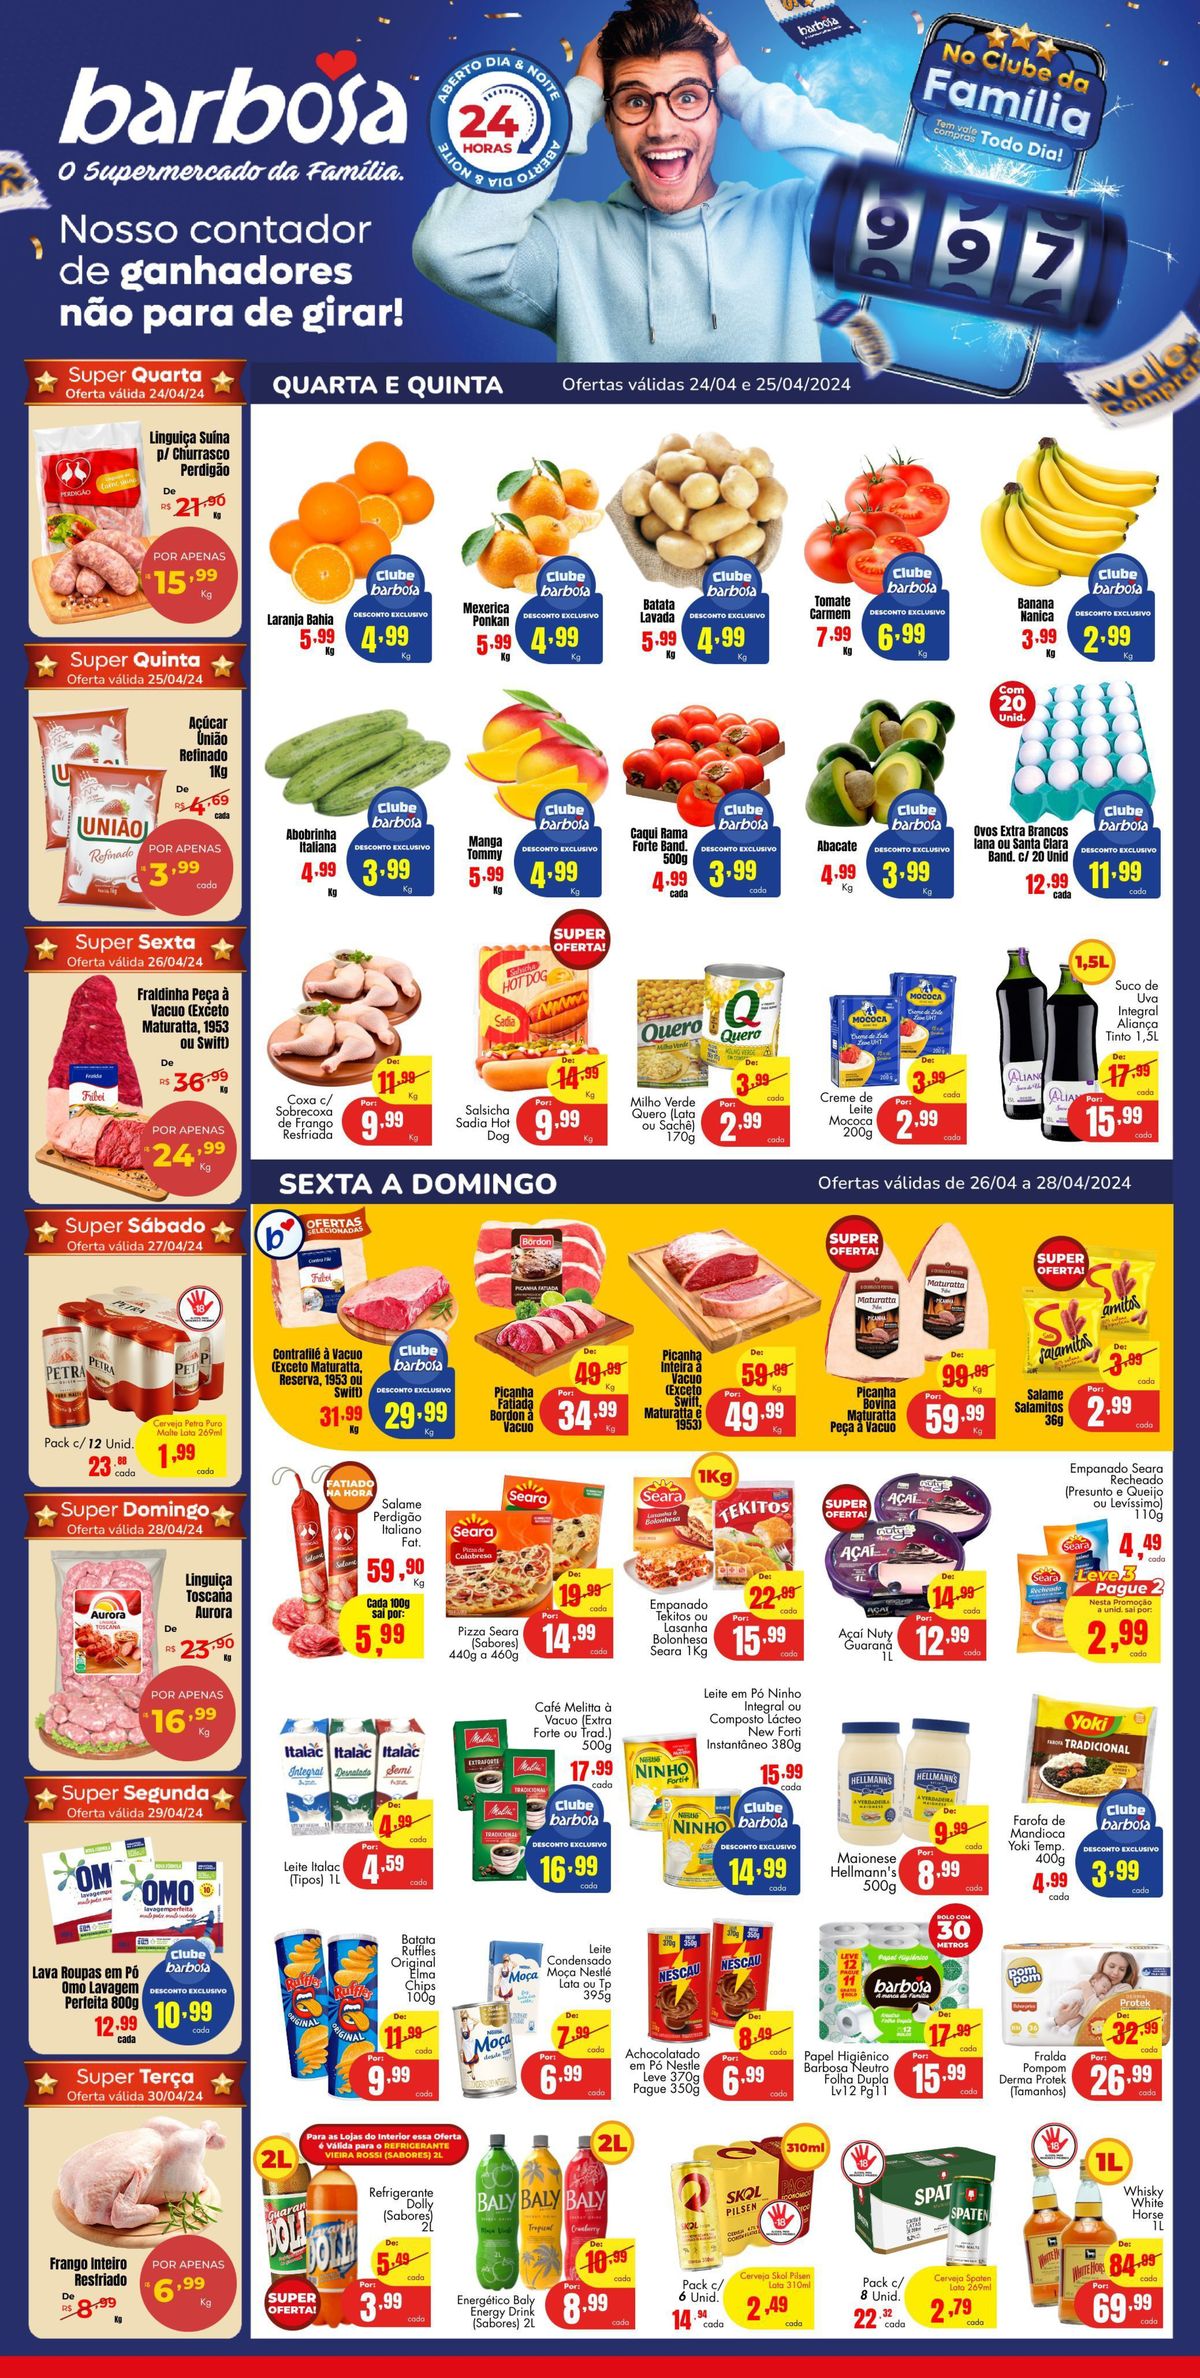 Ofertas de supermercado: Laranja Bahia, Fraldinha à Vacuo, Linguiça Toscana e mais